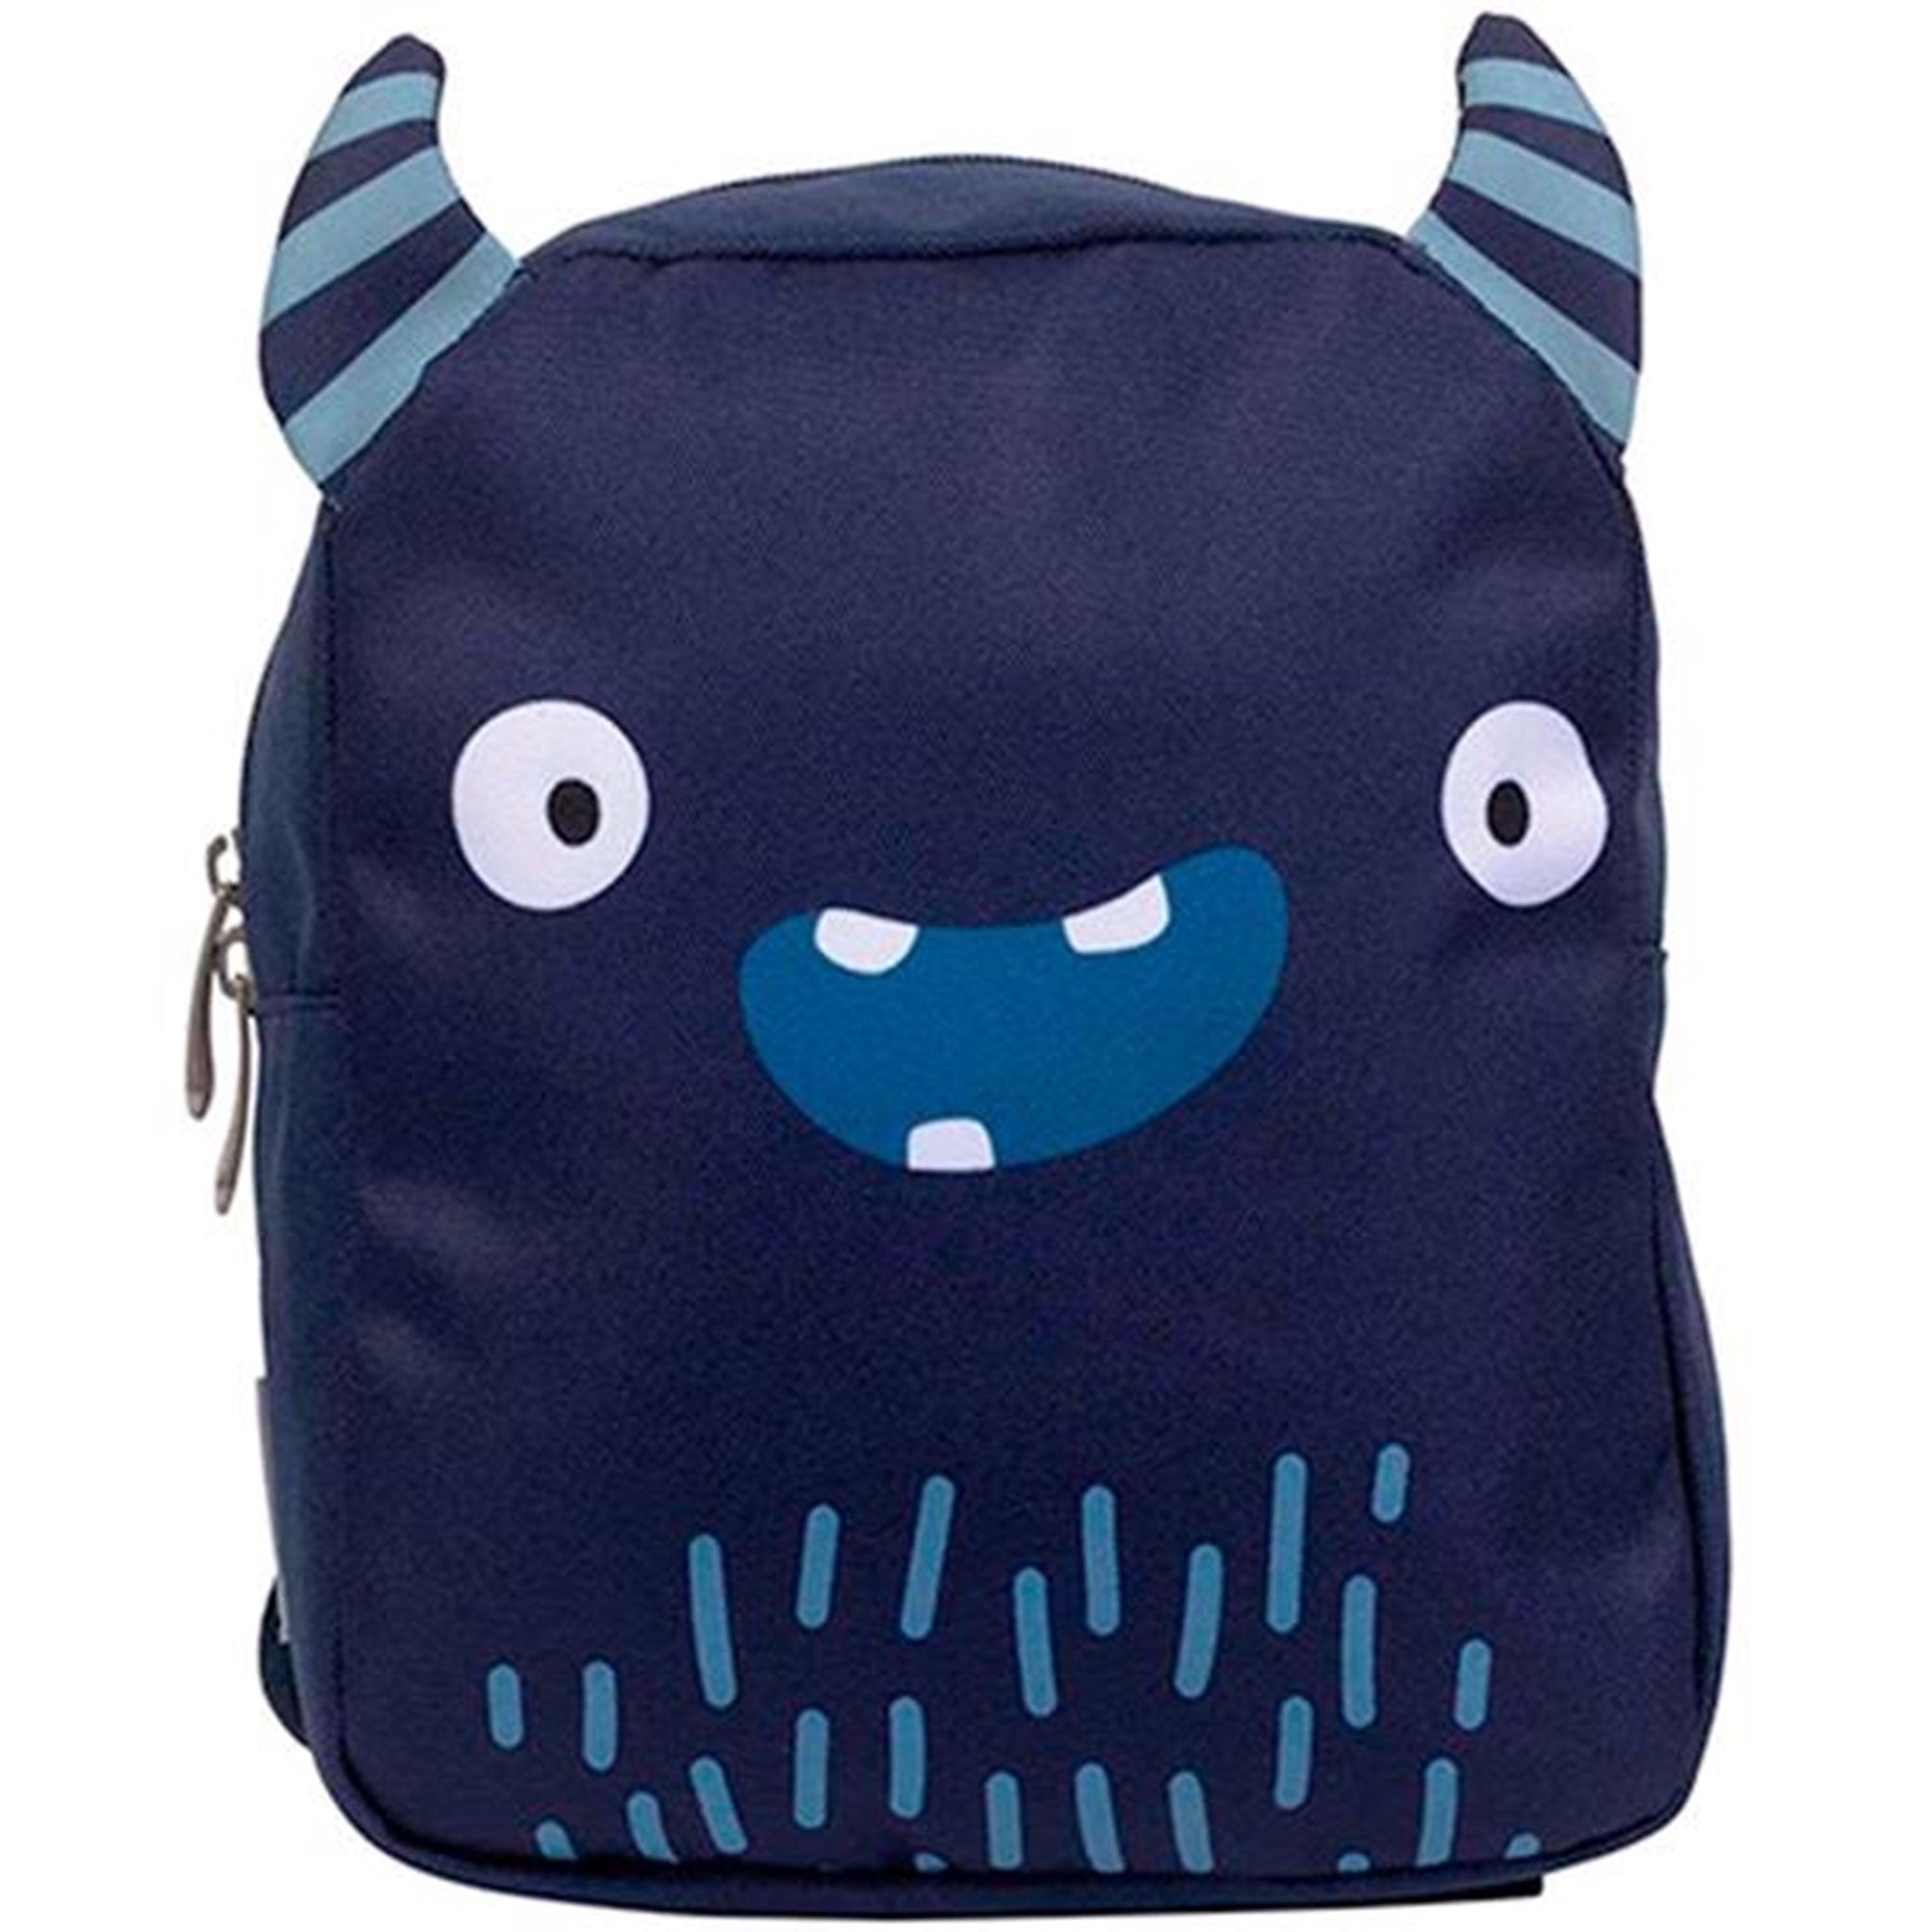 A Little Lovely Company Backpack Monster